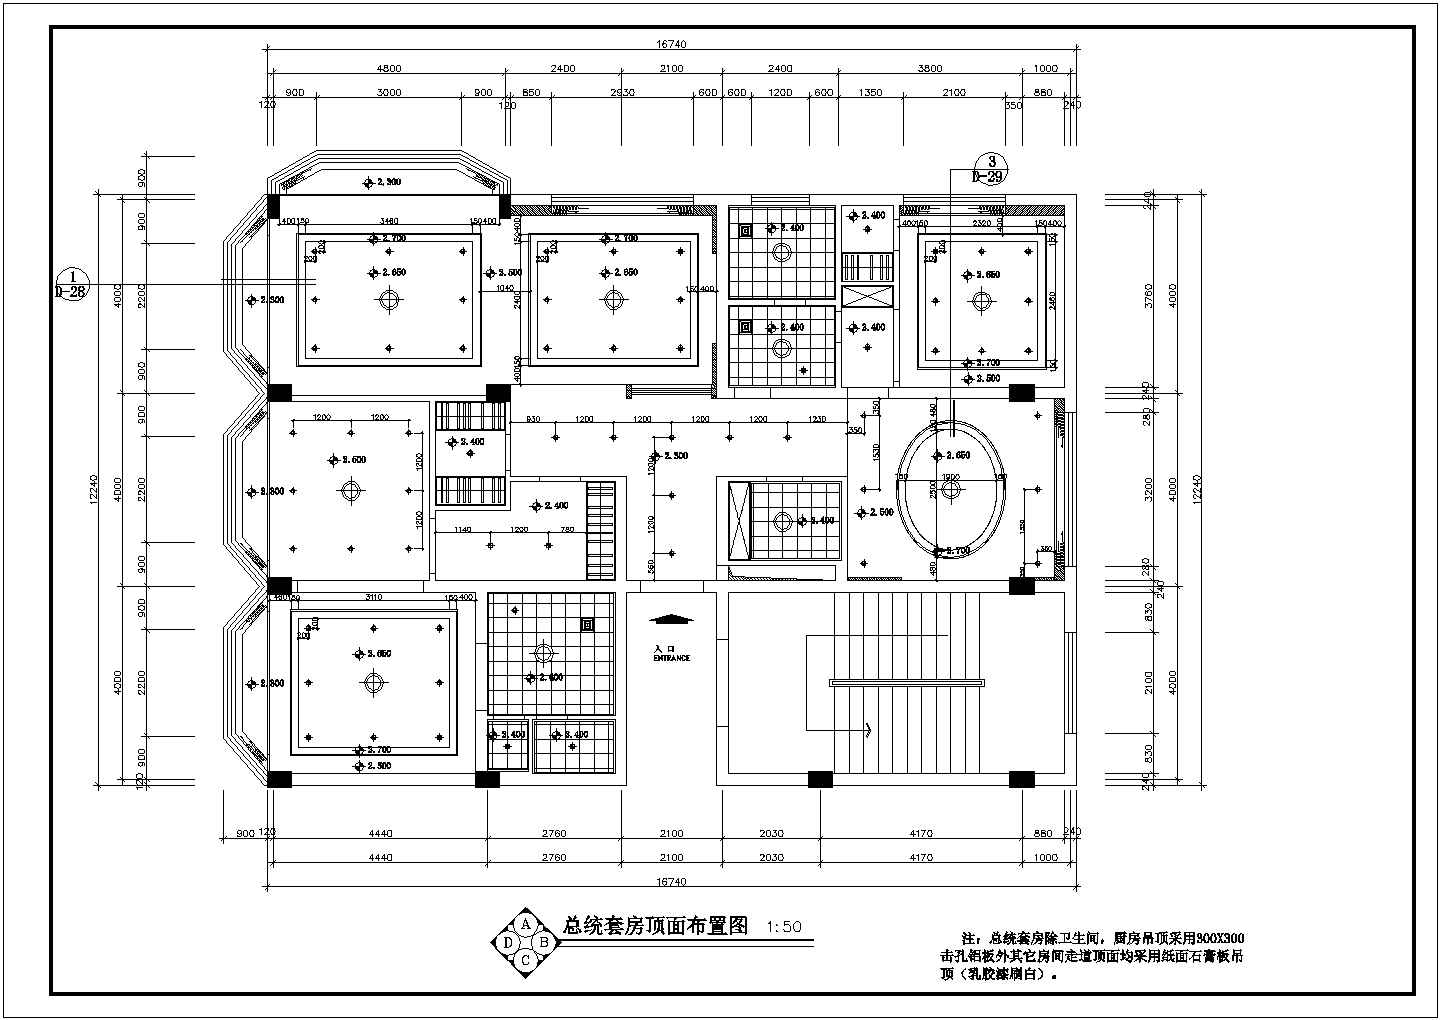 扬州某五星酒店总统套房全套装修施工设计图